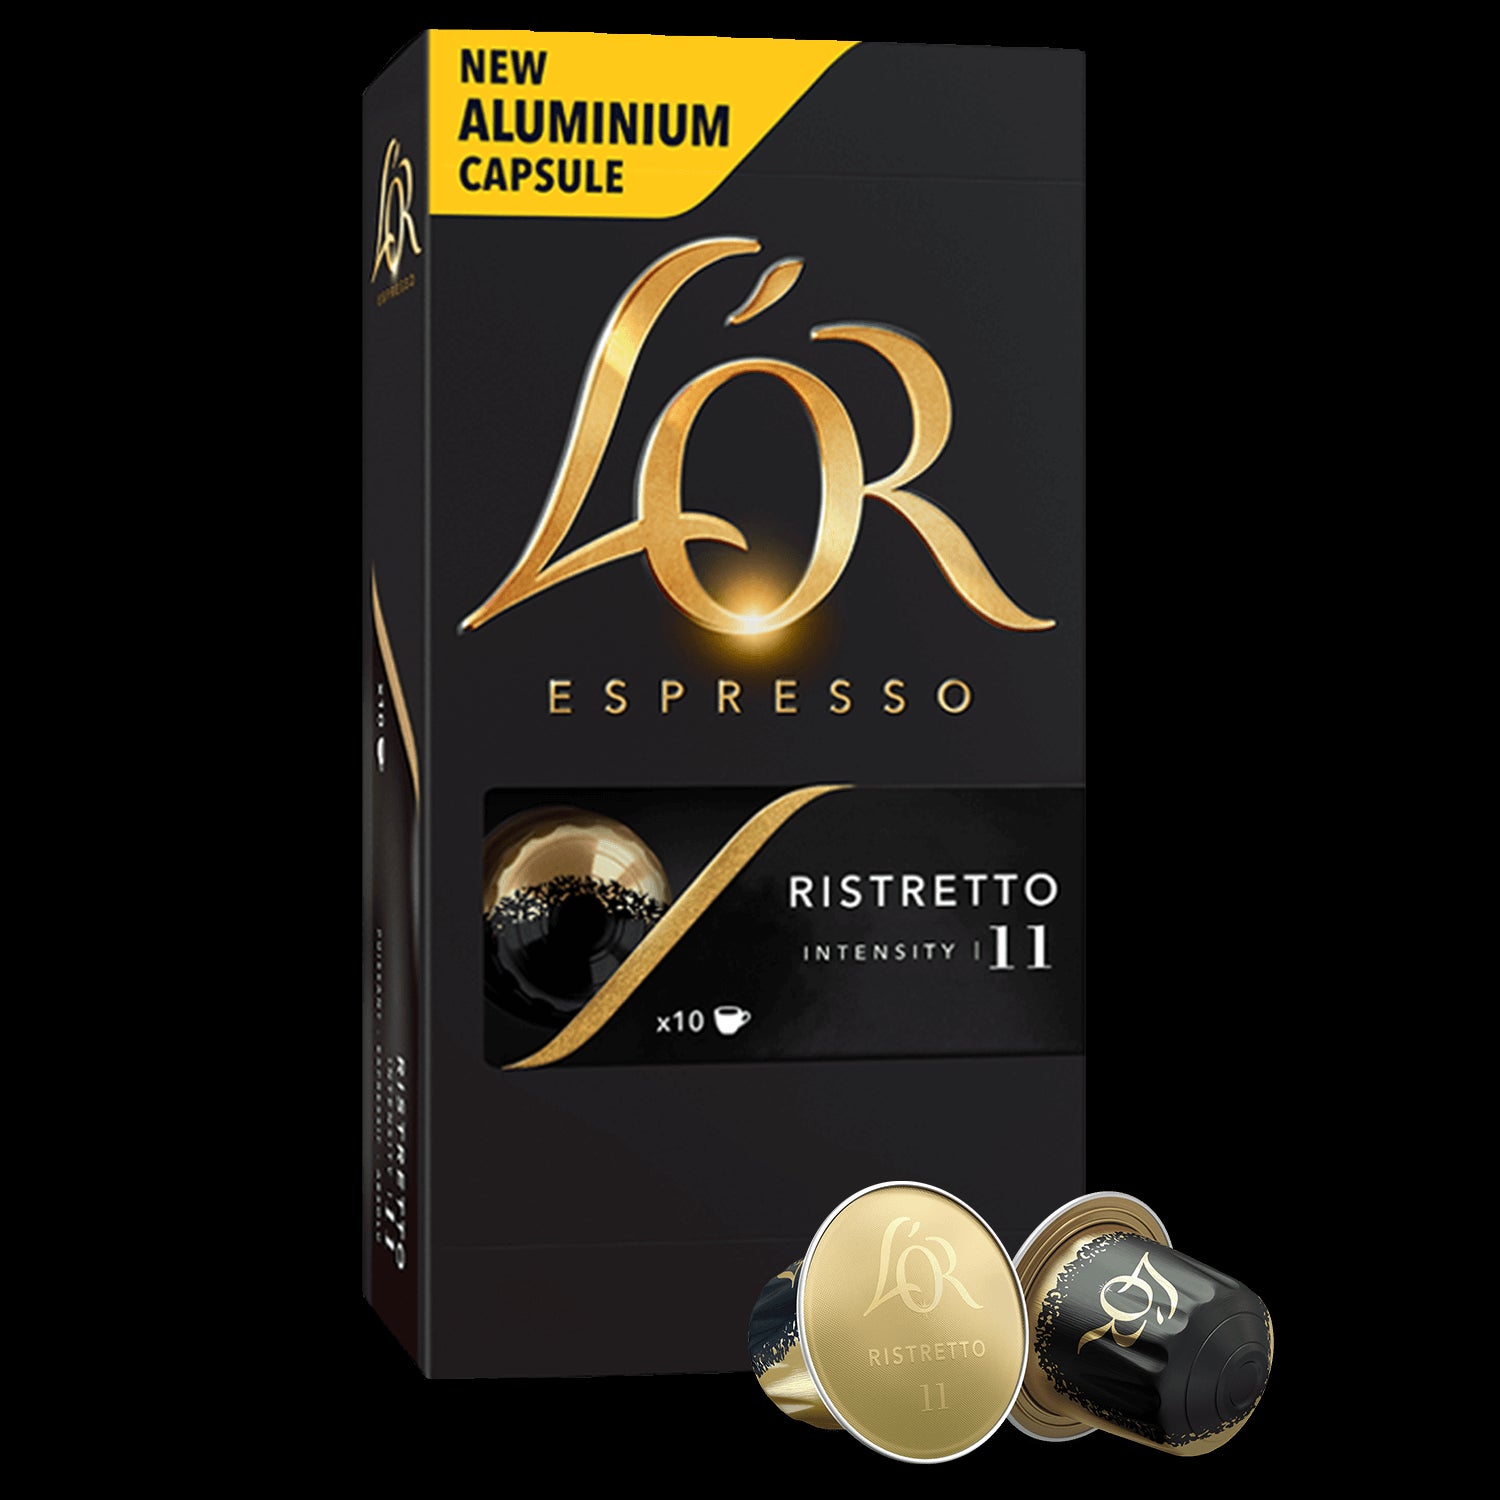 L'or Espresso Ristretto N11 / 40 CAP